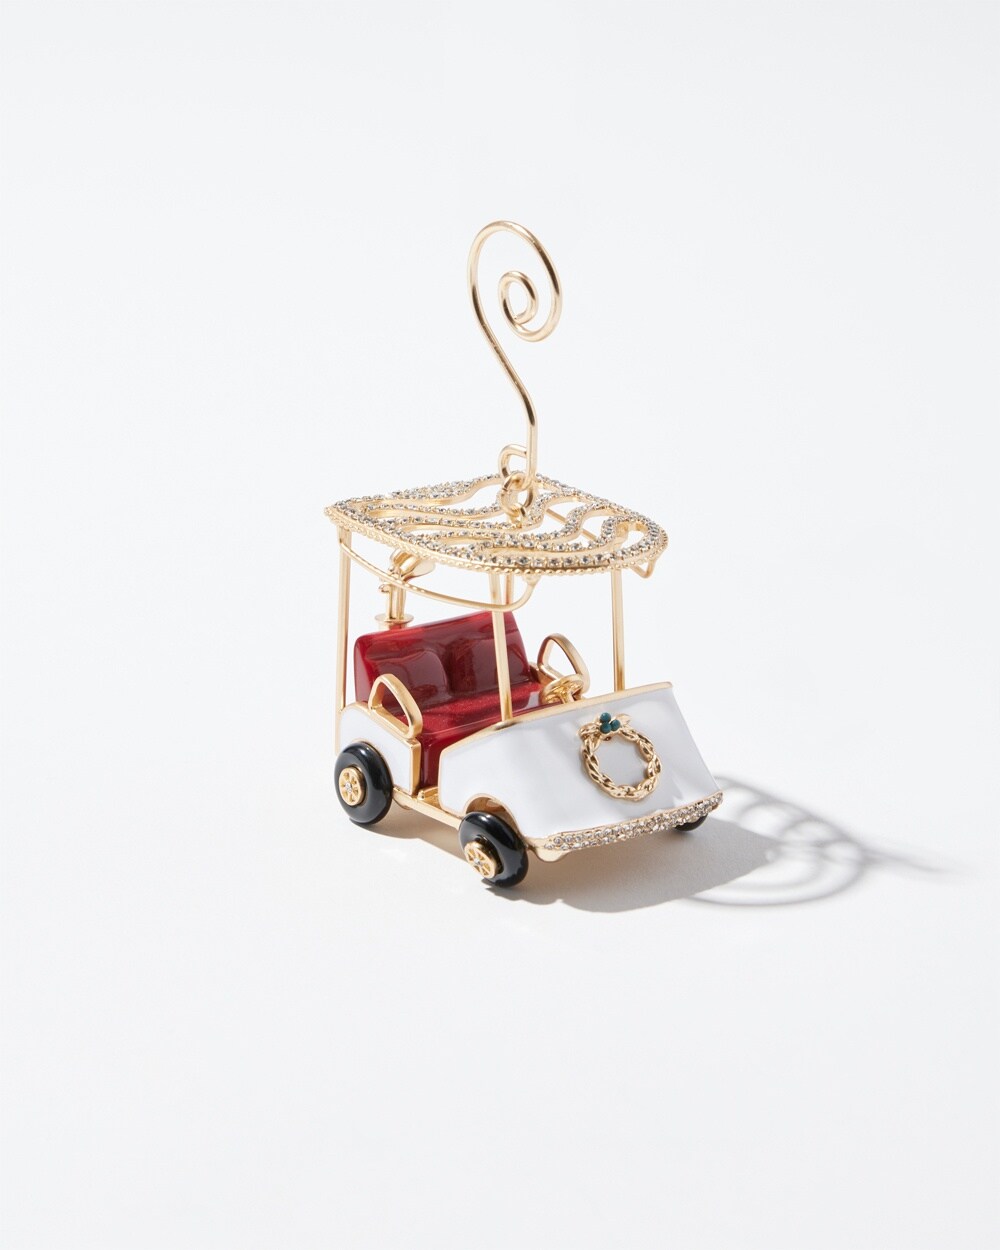 Gold Tone Golf Cart Ornament